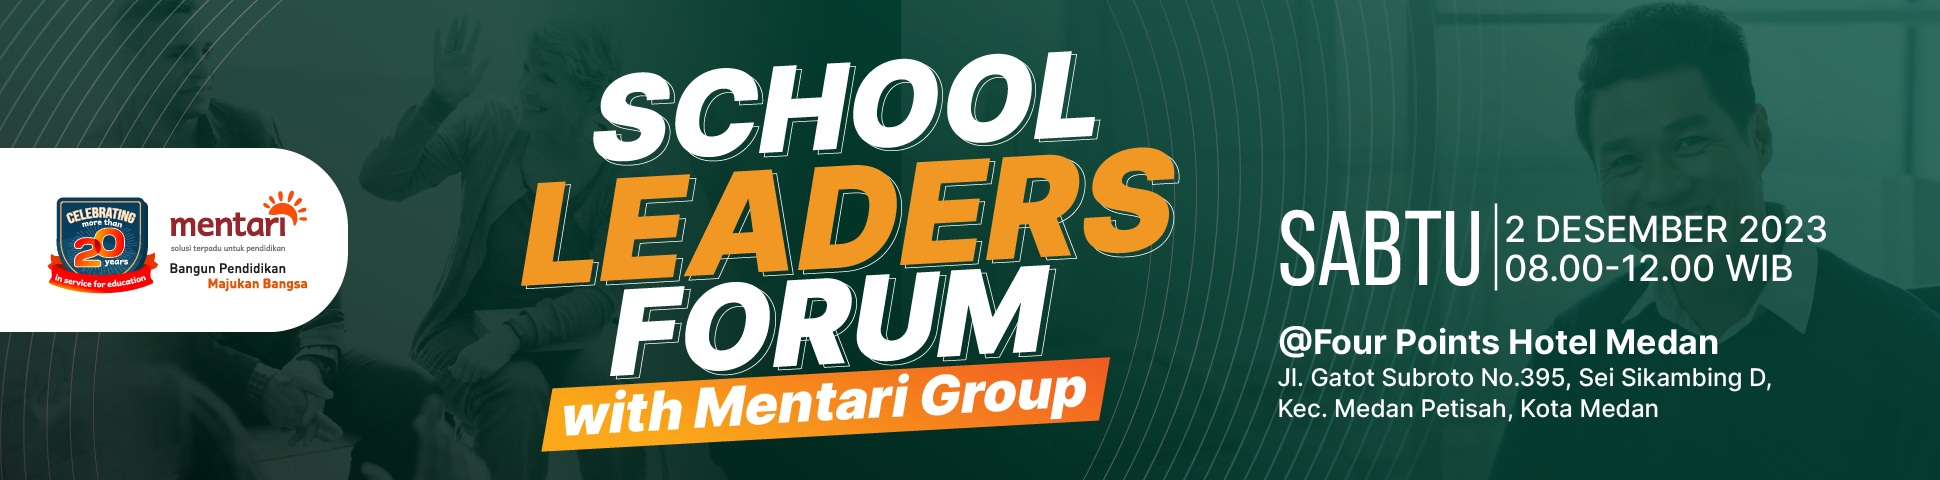 School Leaders Forum with Mentari Group 2023 - Medan